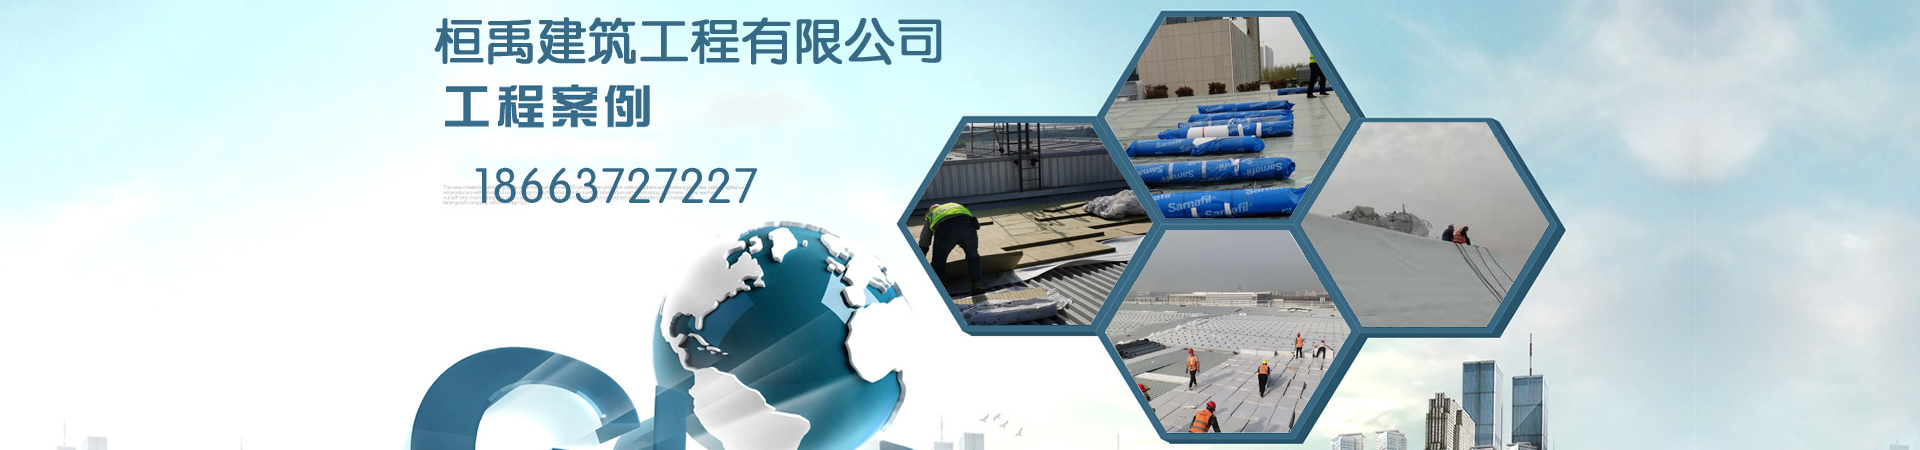 PVC防水卷材、广州本地PVC防水卷材、广州、广州PVC防水卷材